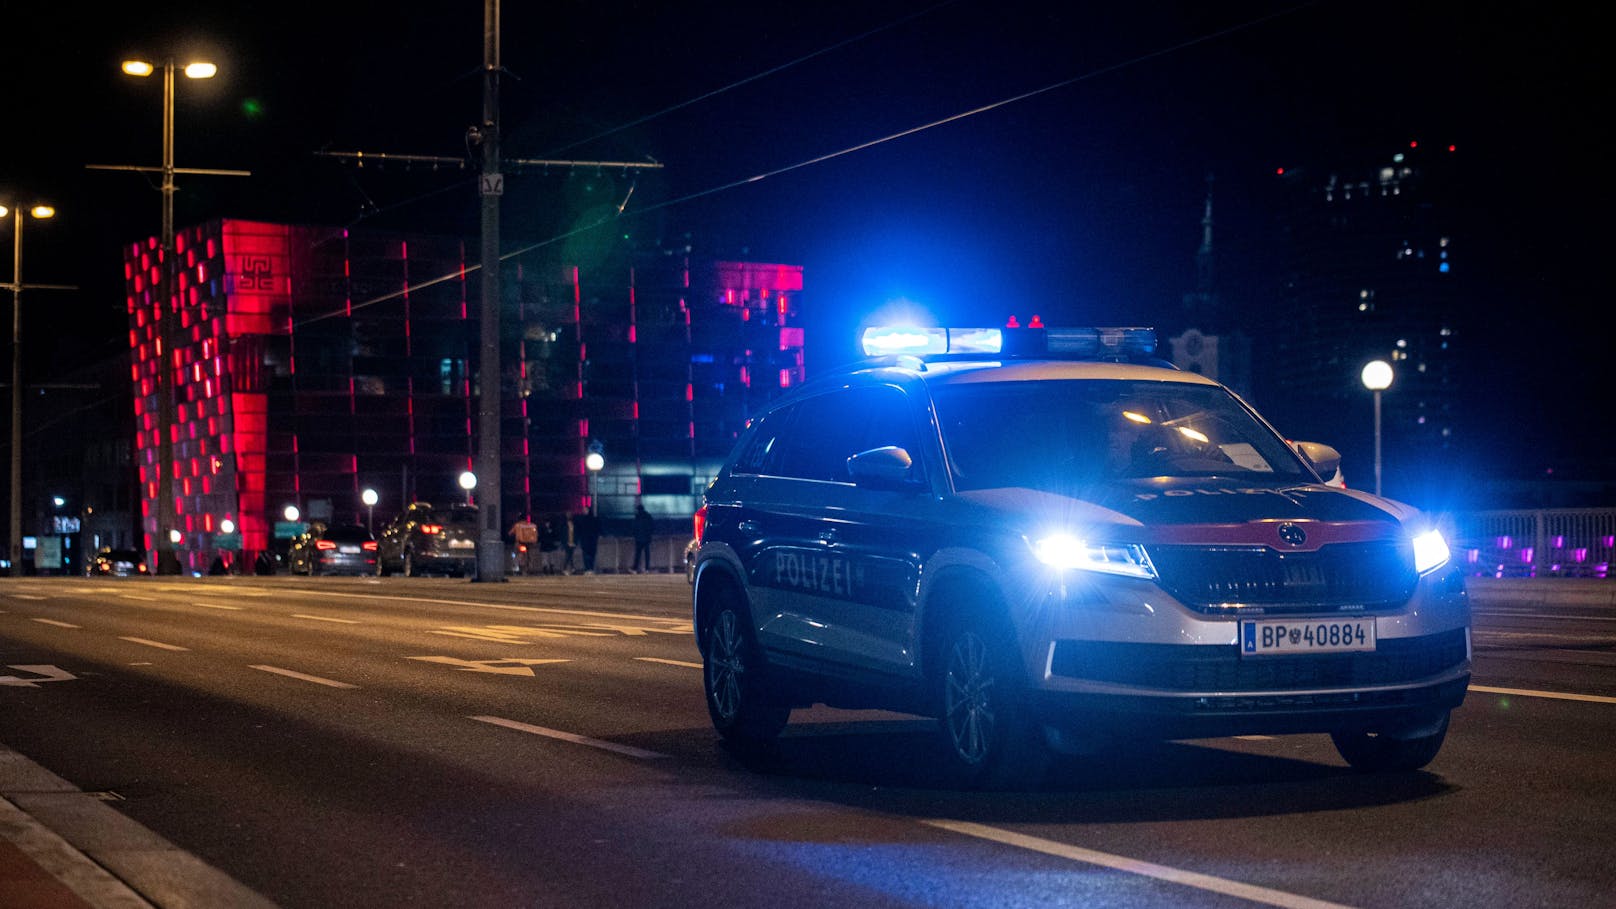 Schuss in Wien! Polizei fasst vier Casino-Räuber